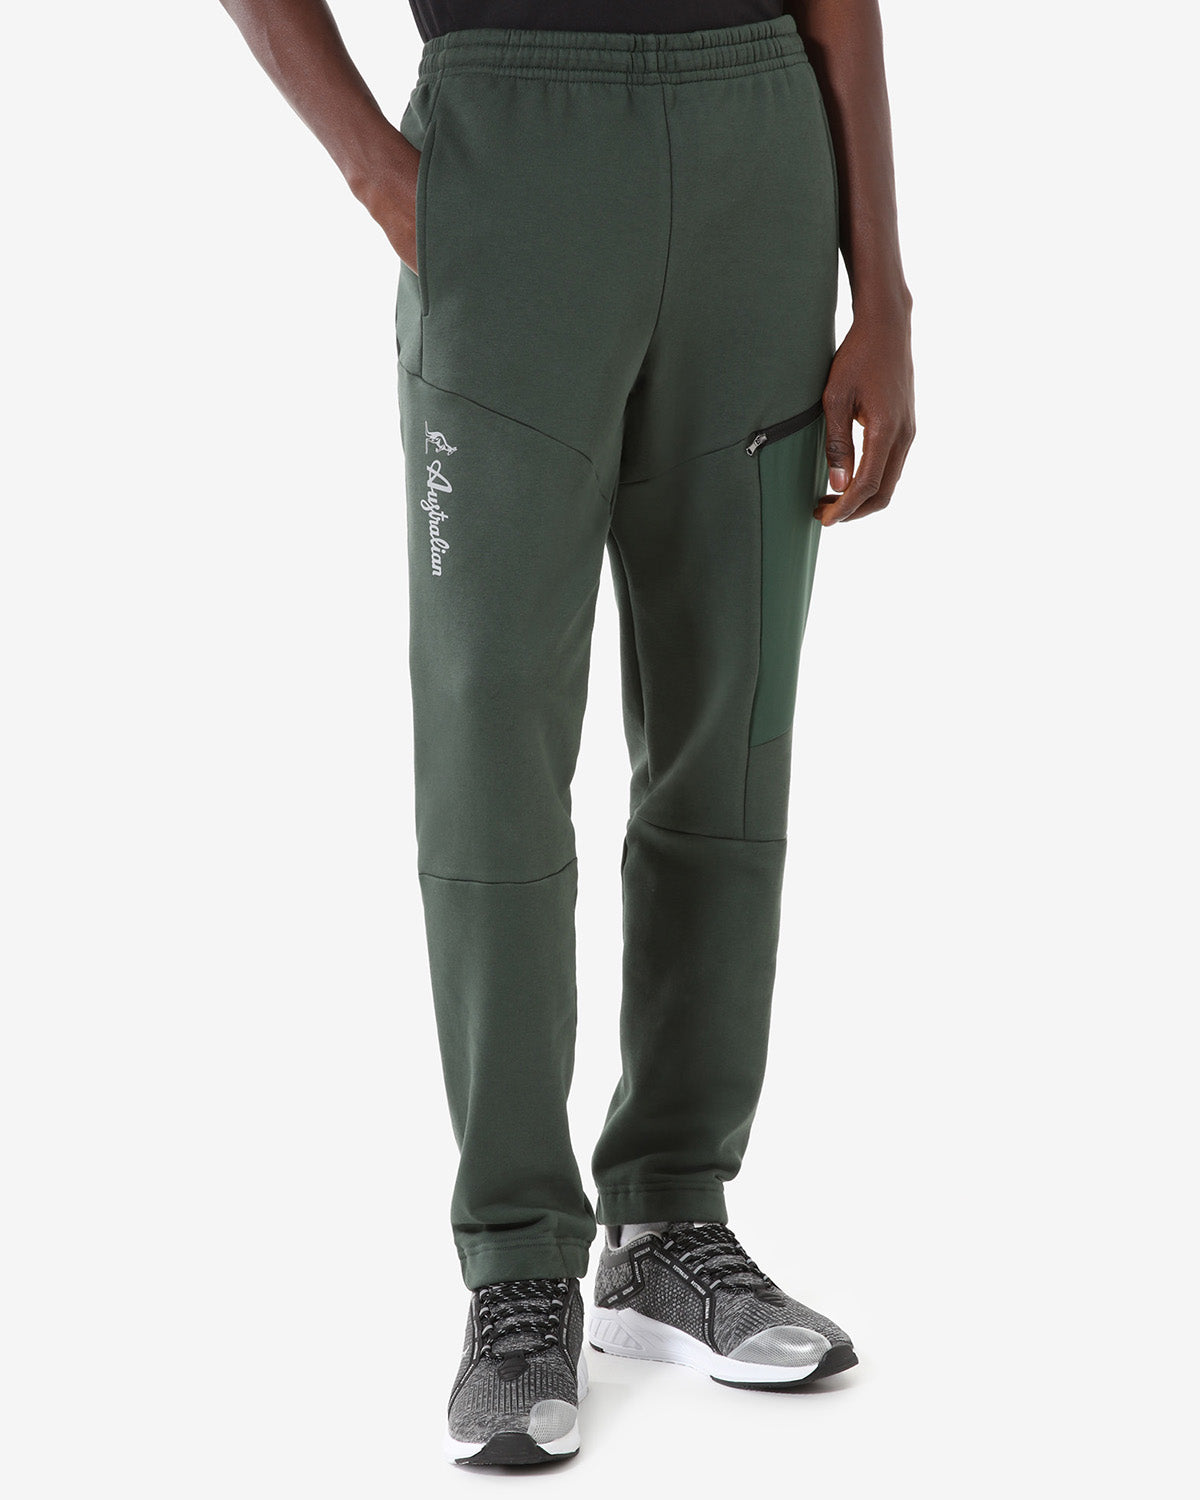 Tek Fleece Pant: Australian Sportswear